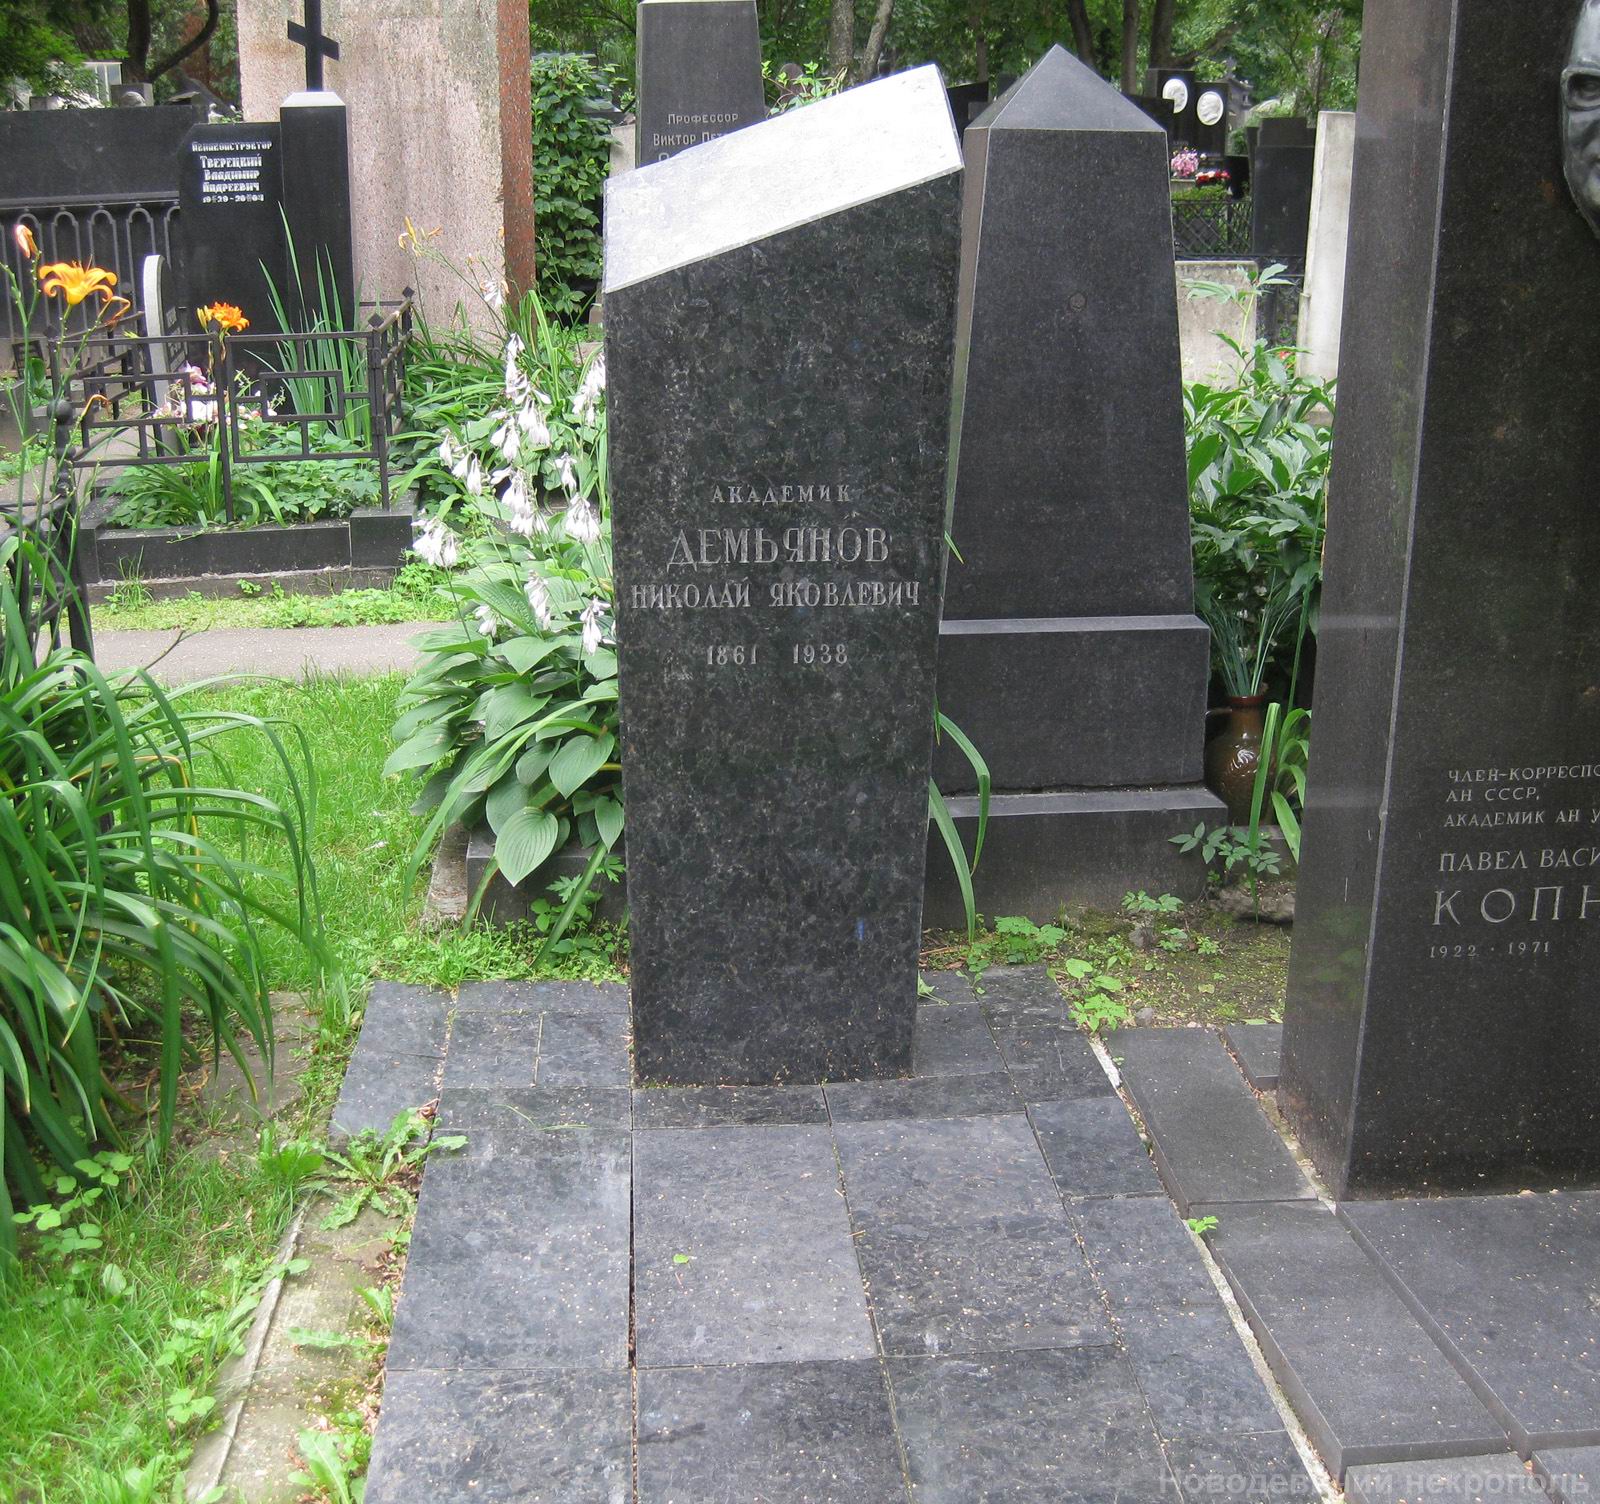 Памятник на могиле Демьянова Н.Я. (1861-1938), арх. Ю.Соколов, на Новодевичьем кладбище (3-20-8).